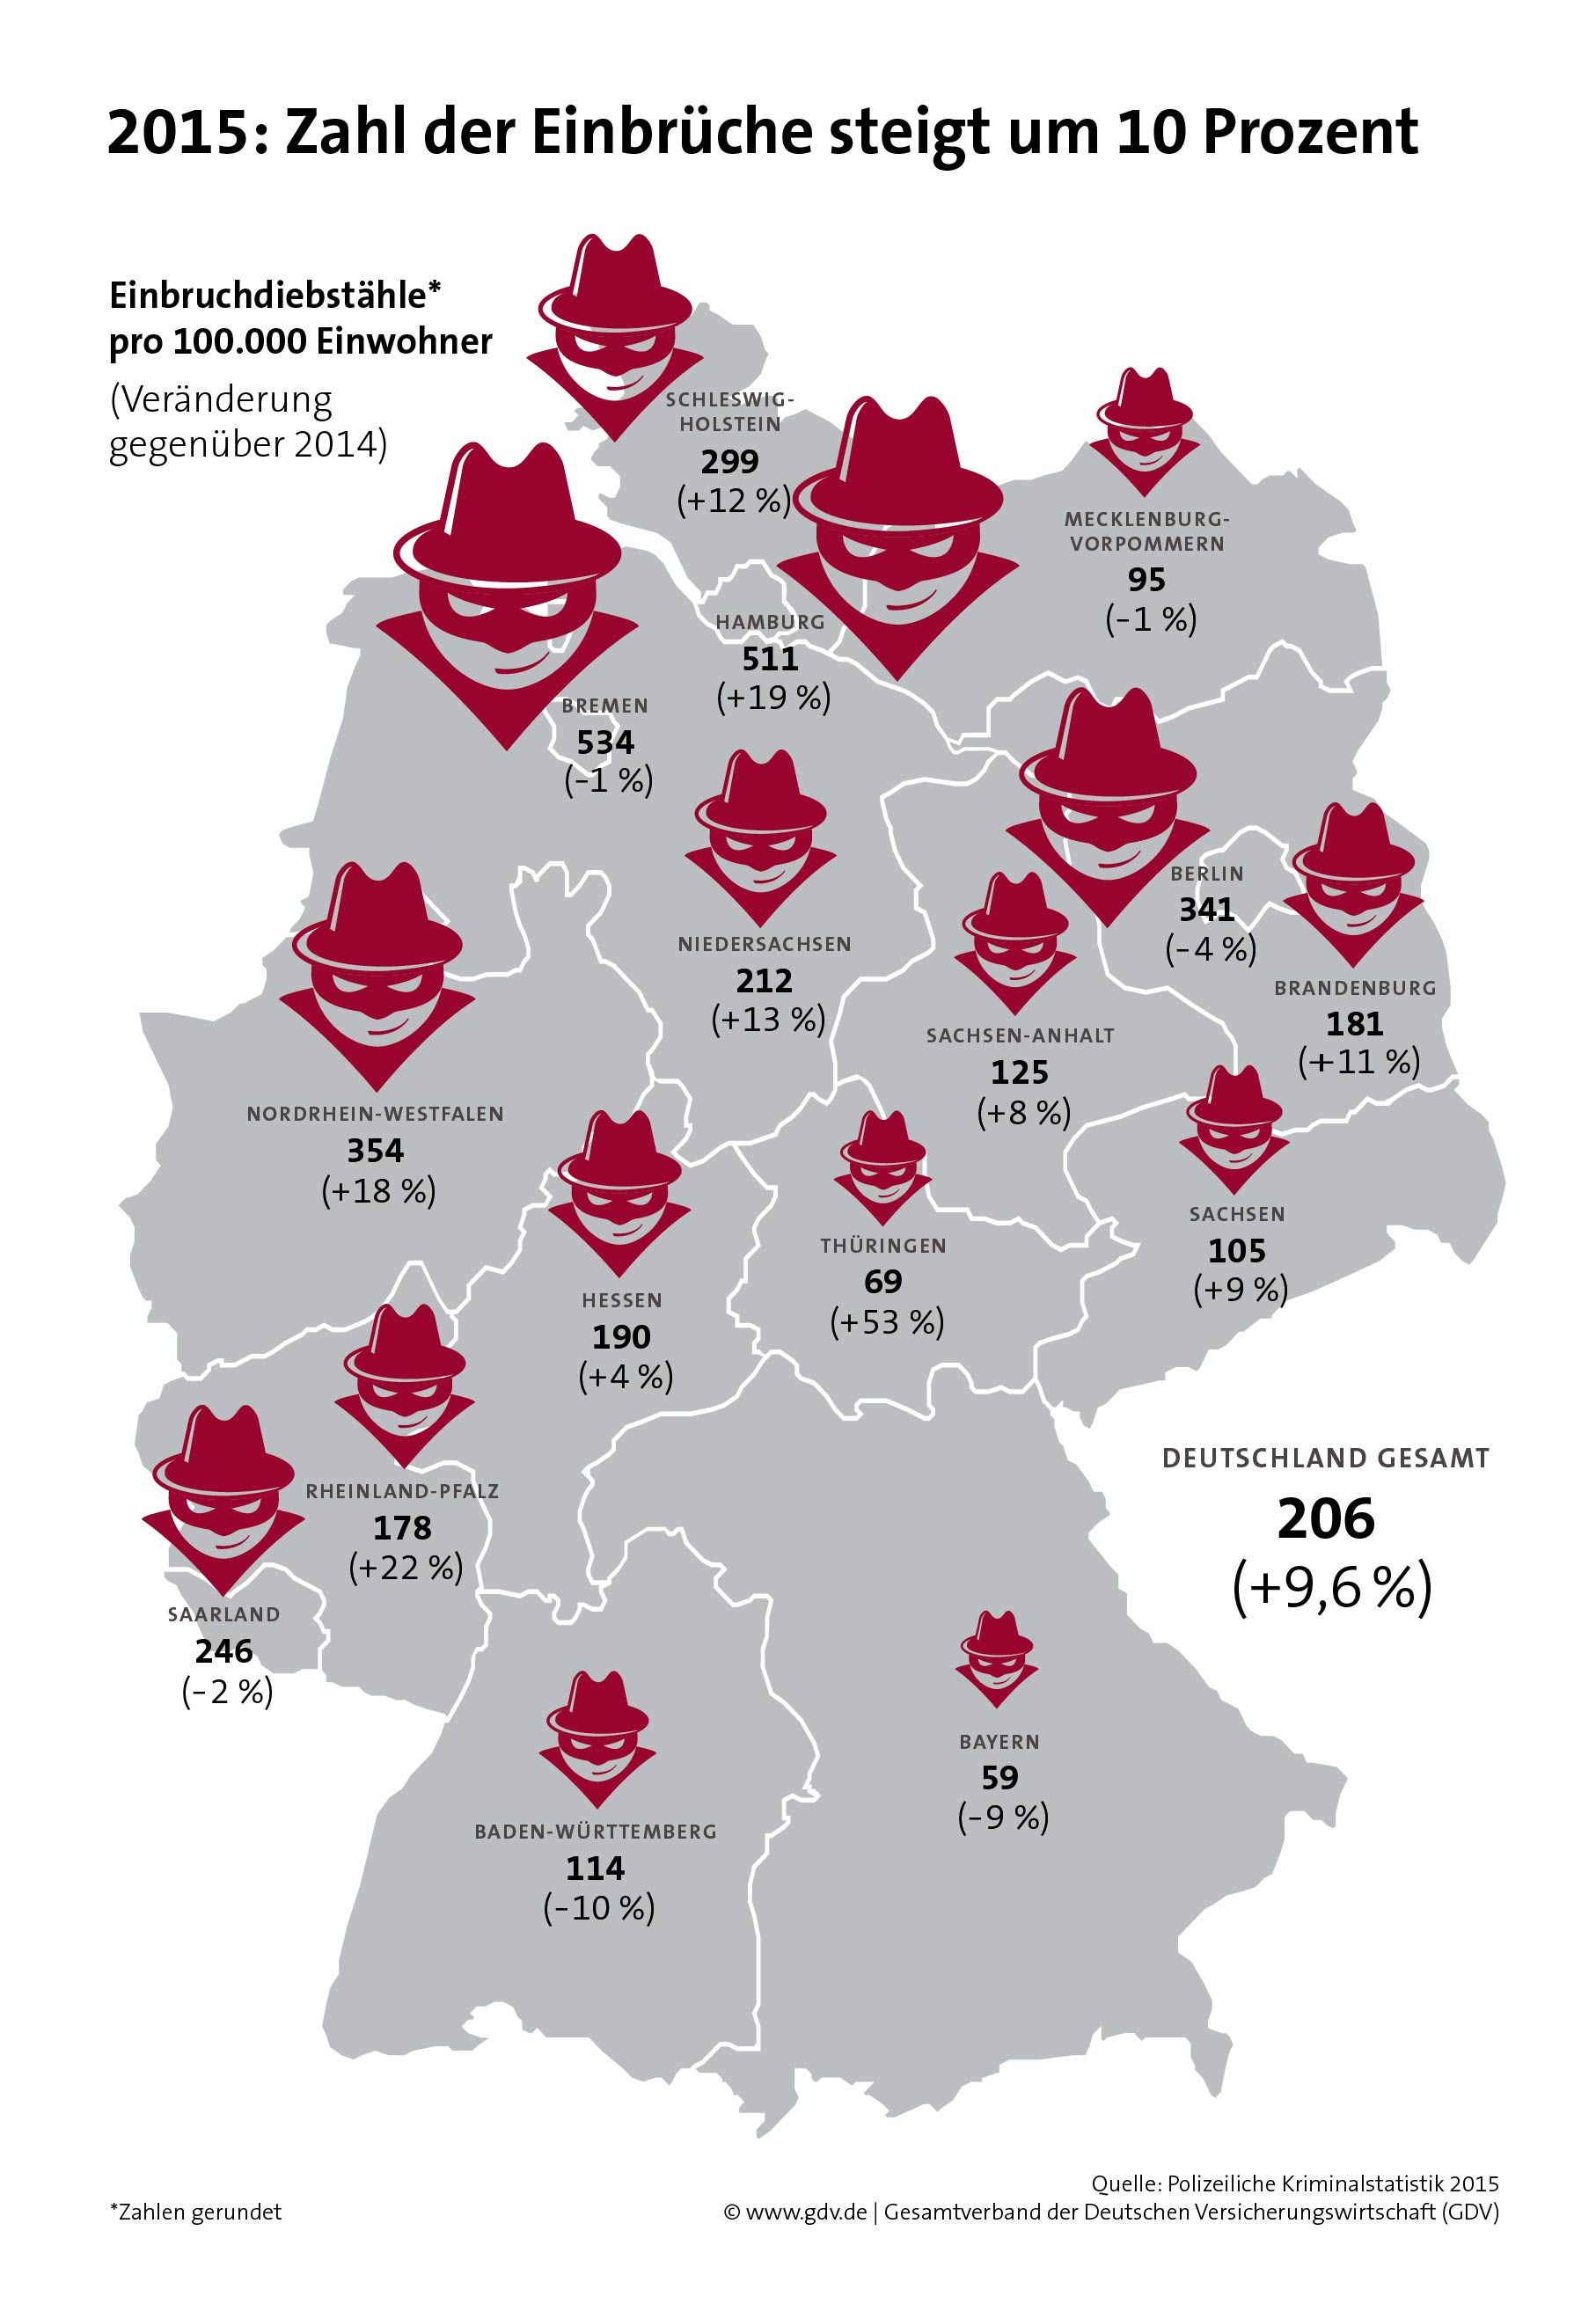 das Bild zeigt die Einbruchszahlen 2015 in Deutschland